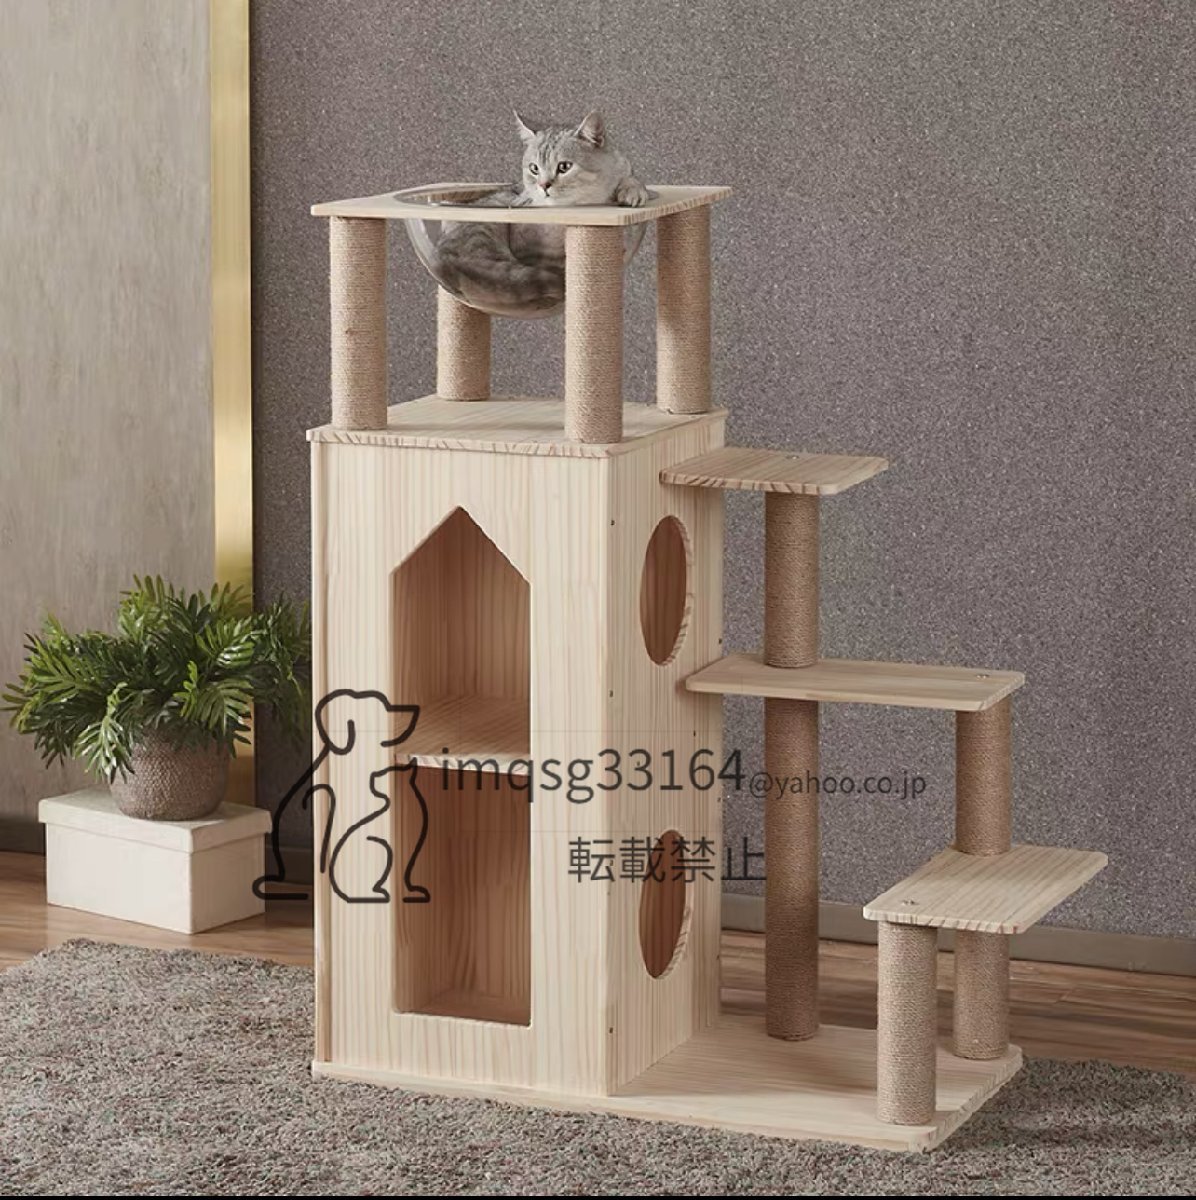 新発売 キャットタワー 多頭飼い 運動不足解消 宇宙船 木製 猫タワー